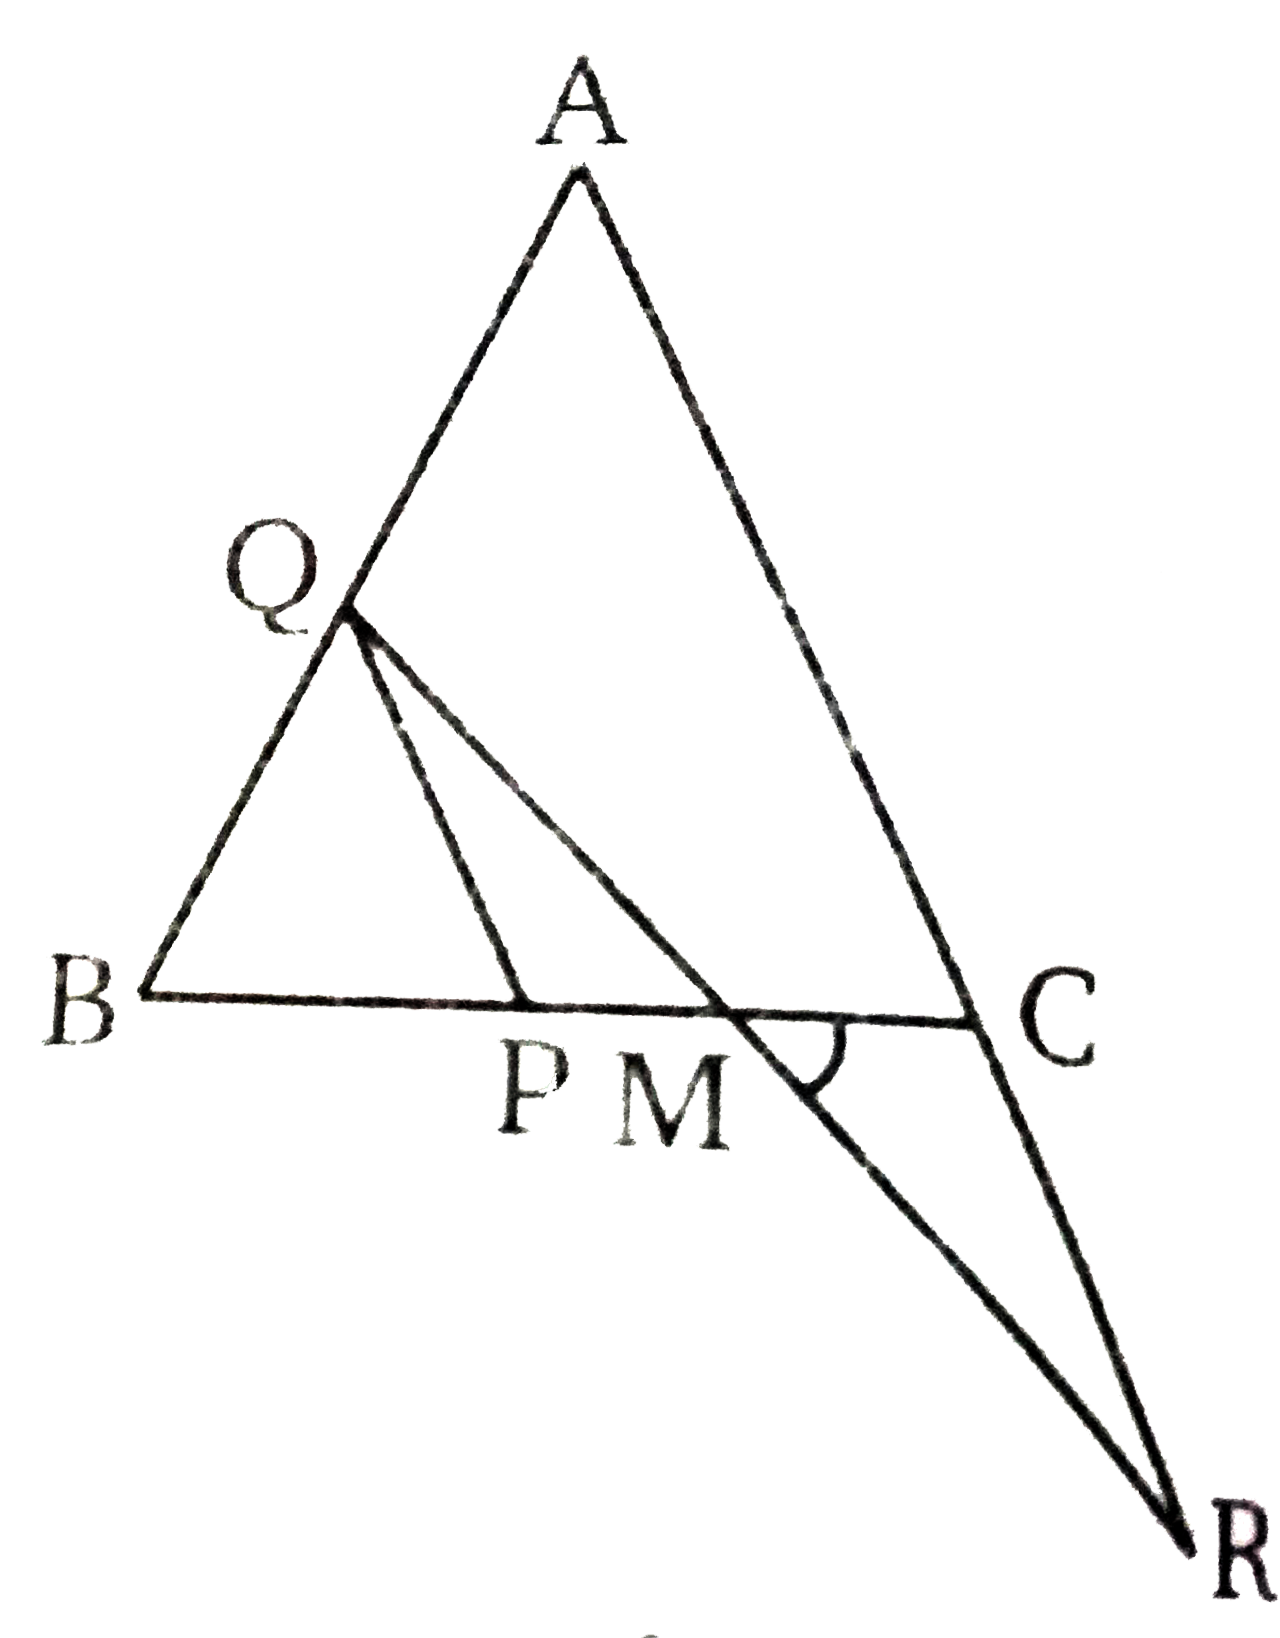 संलग्न चित्र में , एक समबाहु  त्रिभुज ABC  है । PQ||ACतथा AC को R तक इस प्रकार बढ़ाया है कि CR = BP तो दिखाइये  कि QR, PC को समद्विभाजक करता है ।